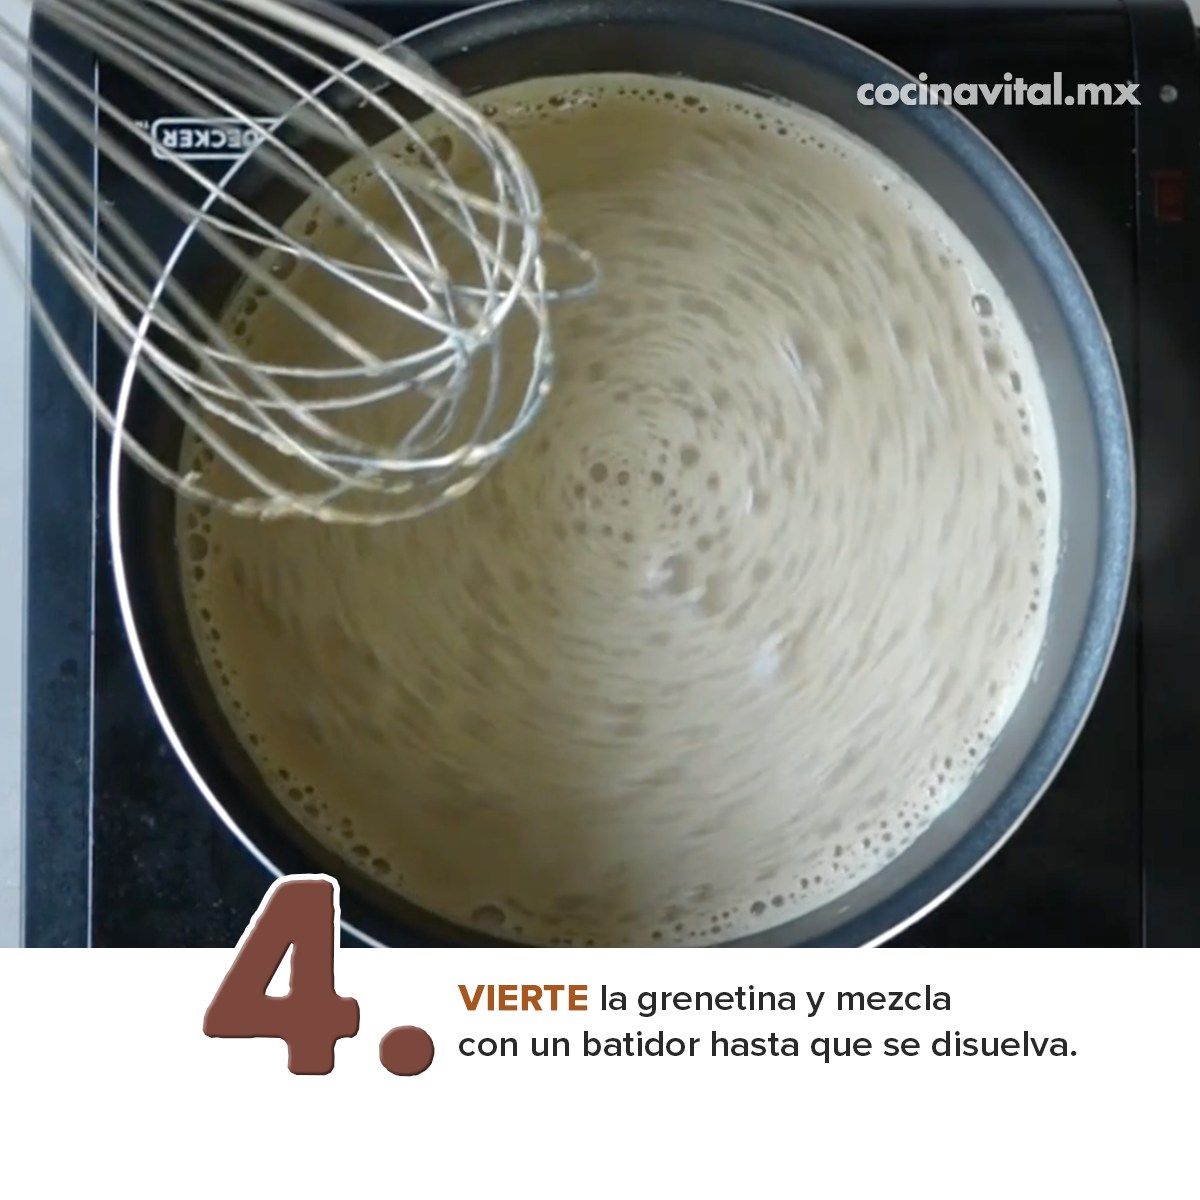 4. VIERTE la grenetina y mezcla con un batidor hasta que se disuelva. 